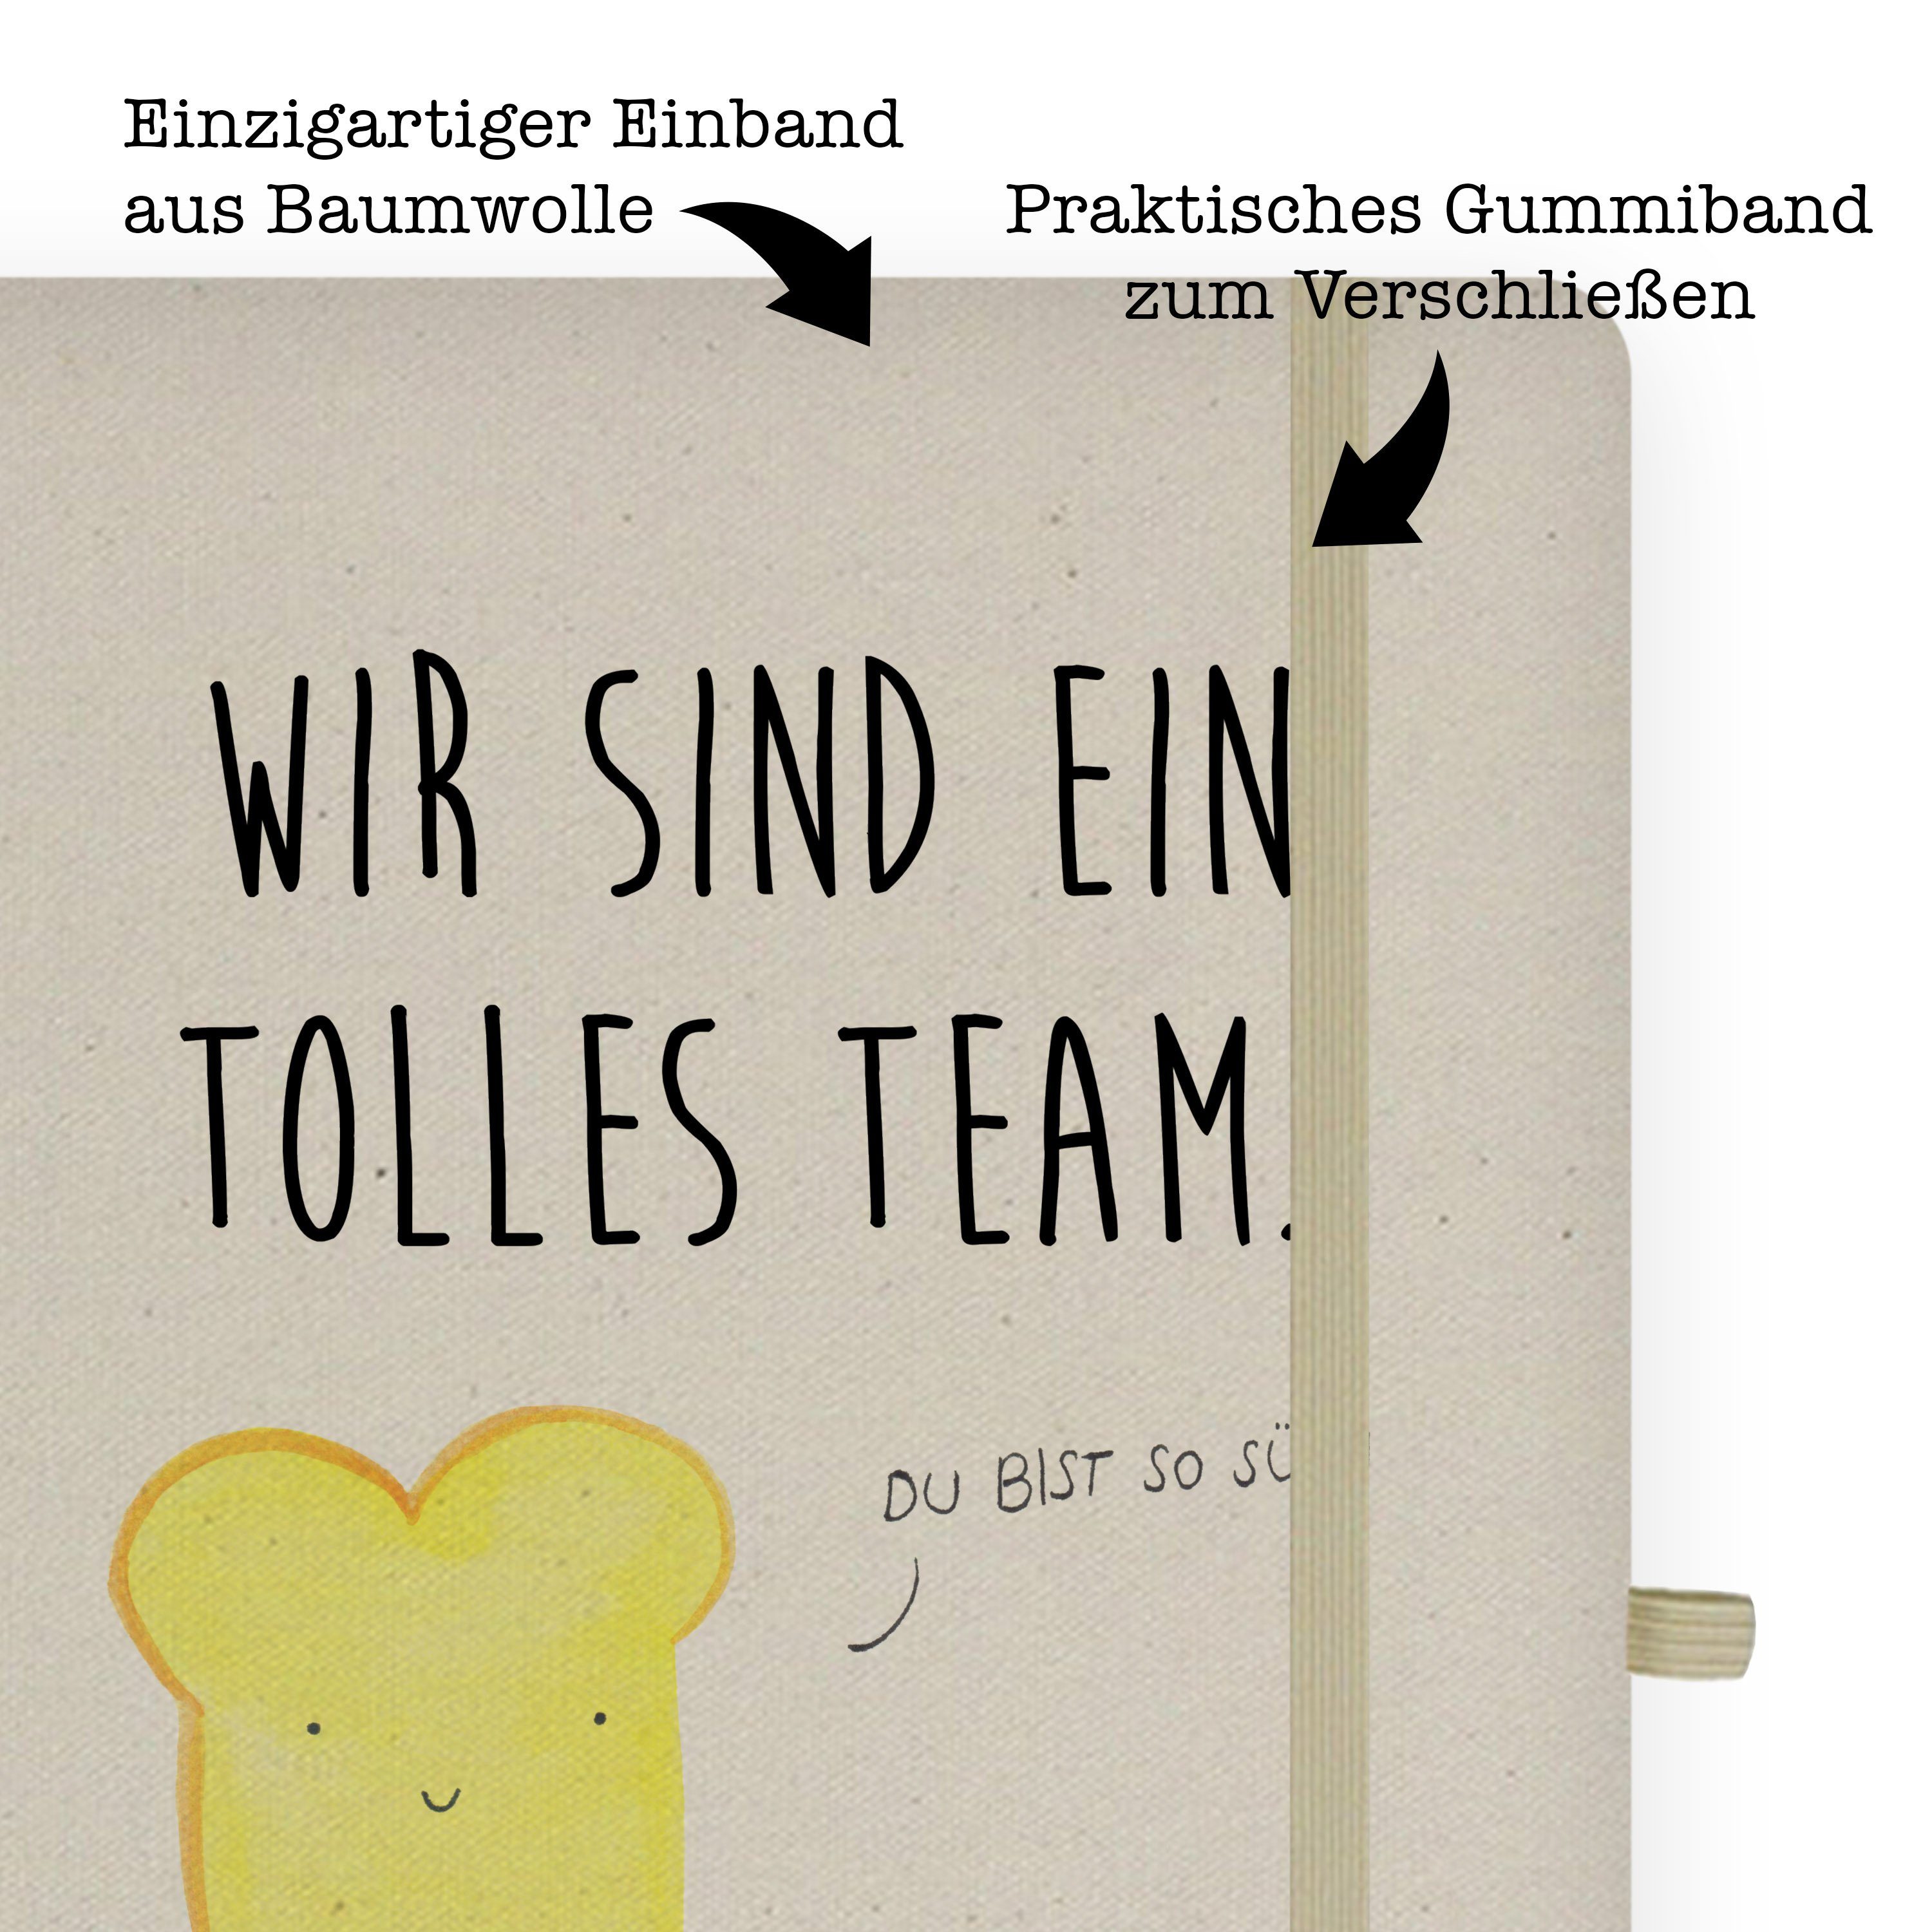 Mr. & Mrs. Panda Notizbuch Toast & Marmelade - Transparent - Geschenk, Notizheft, süße Postkarte